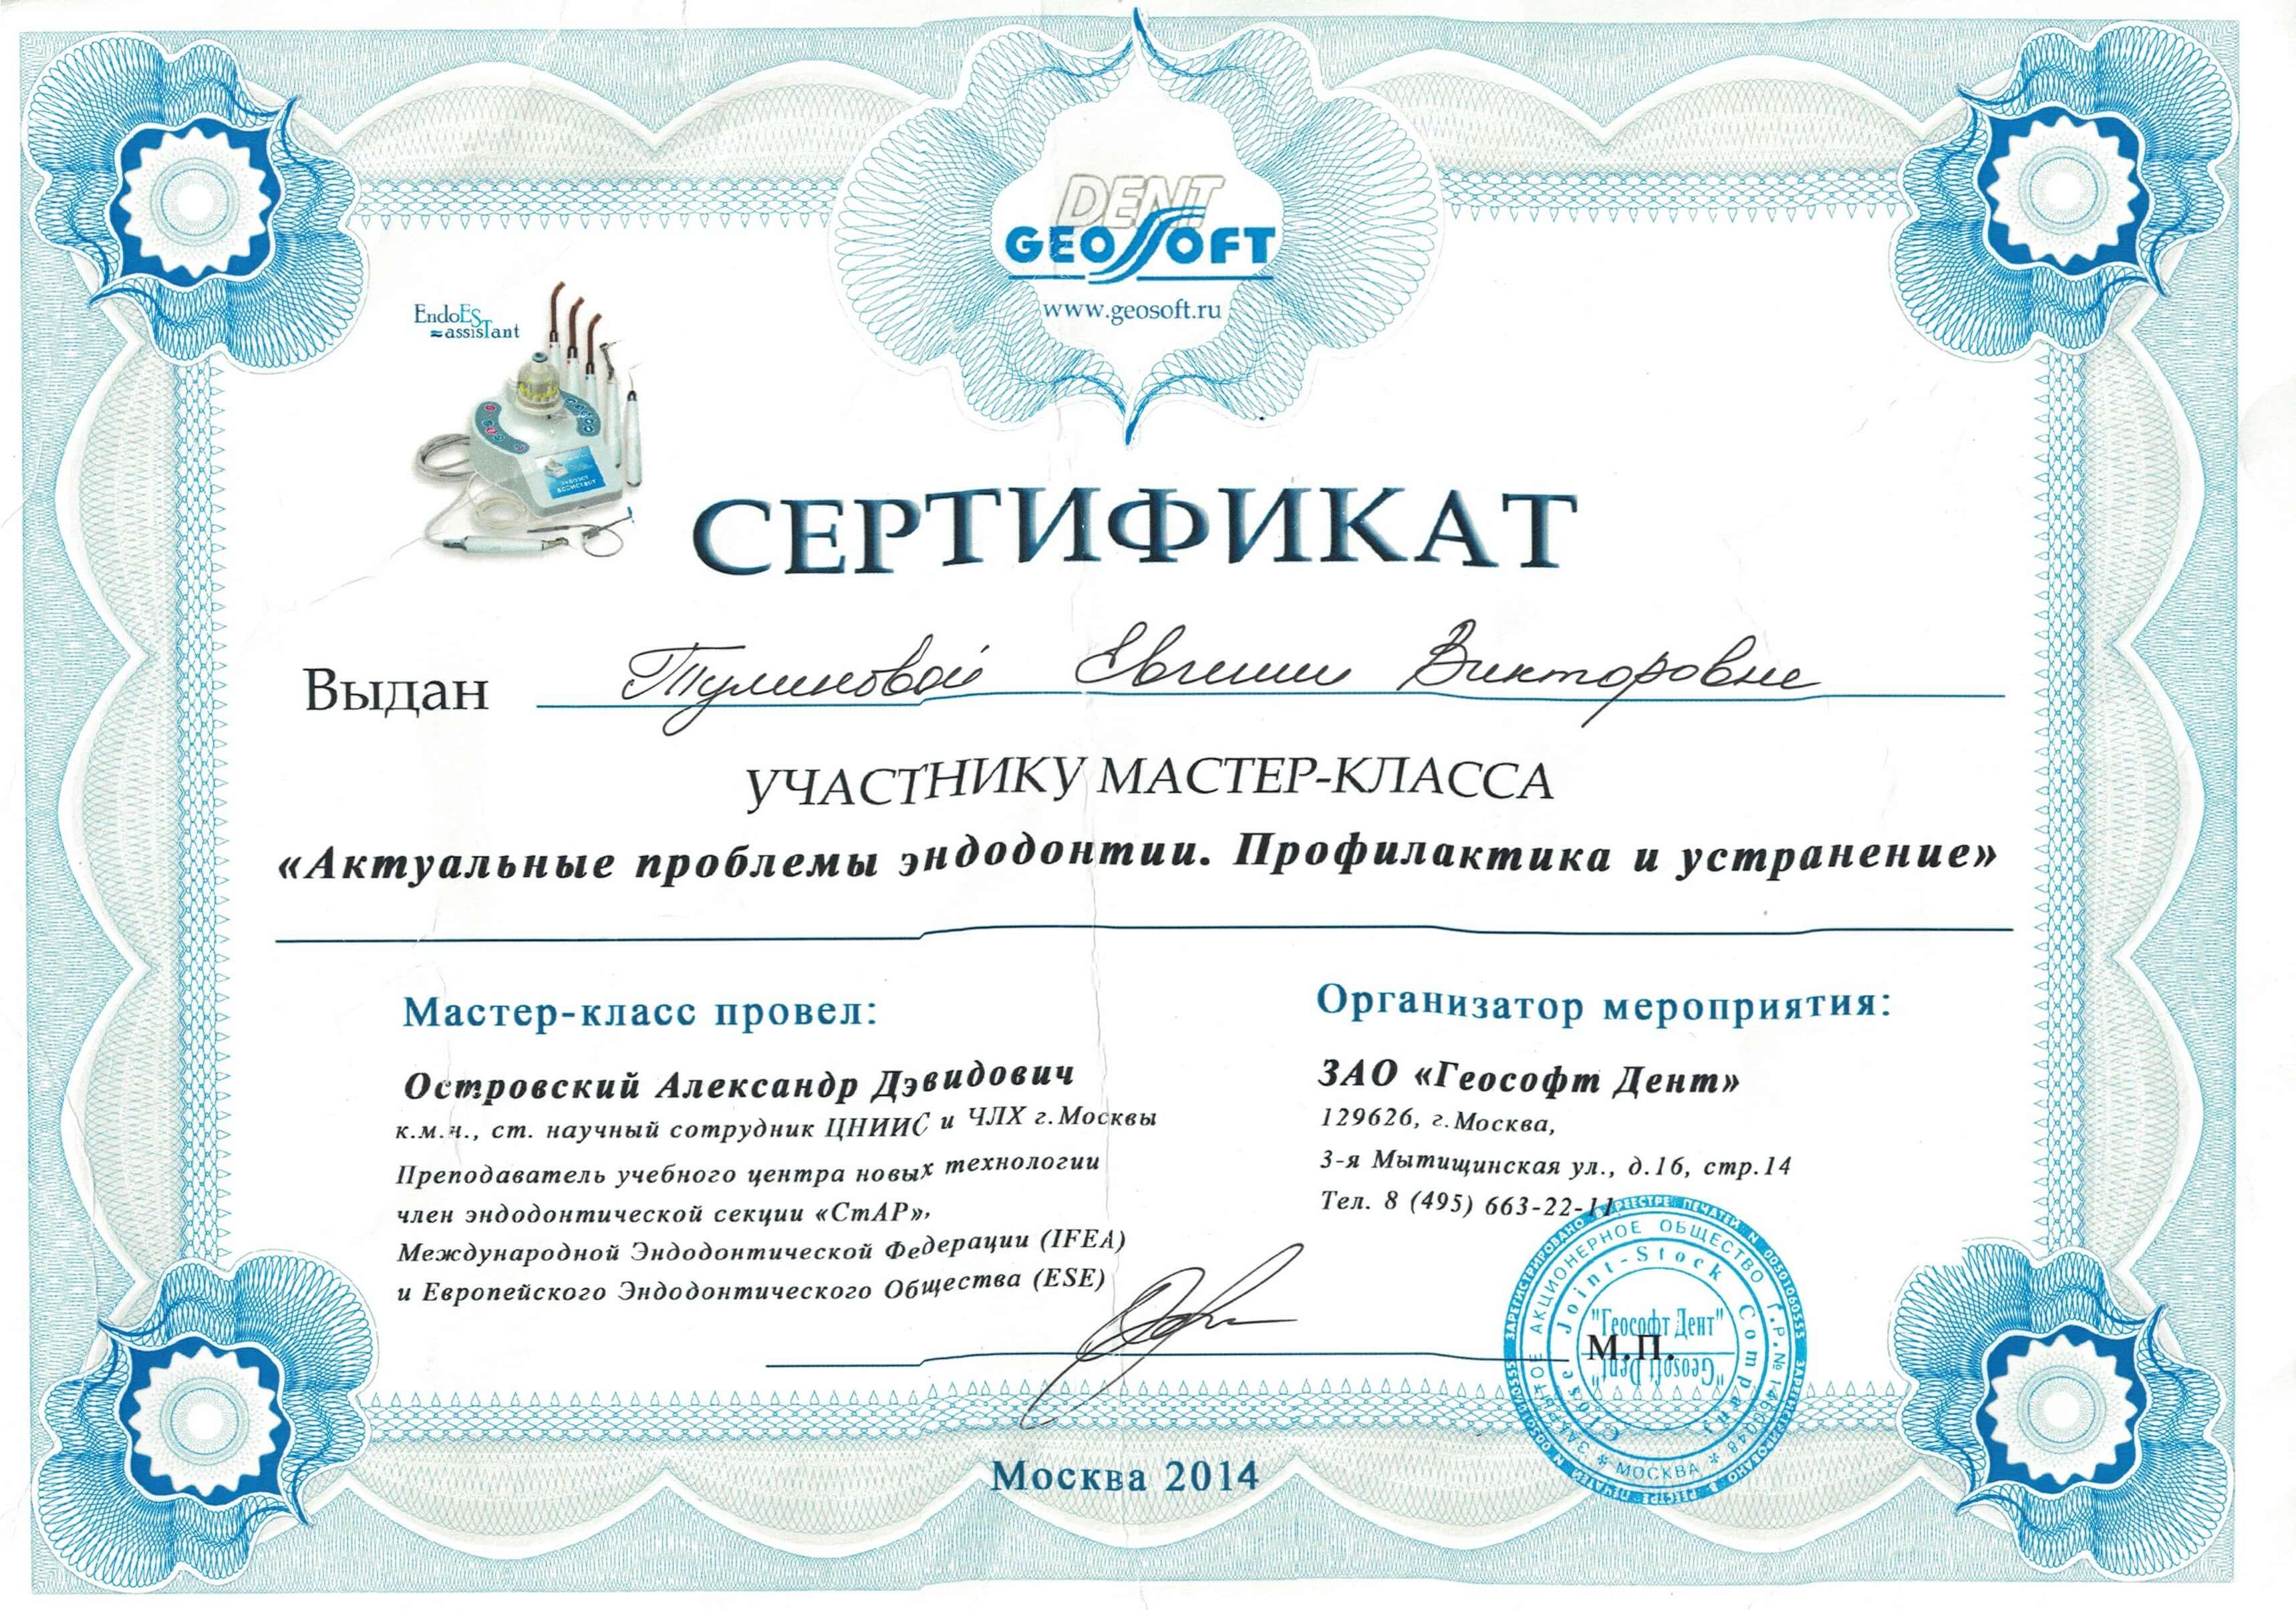 Сертификат Тулиновой Е.В.